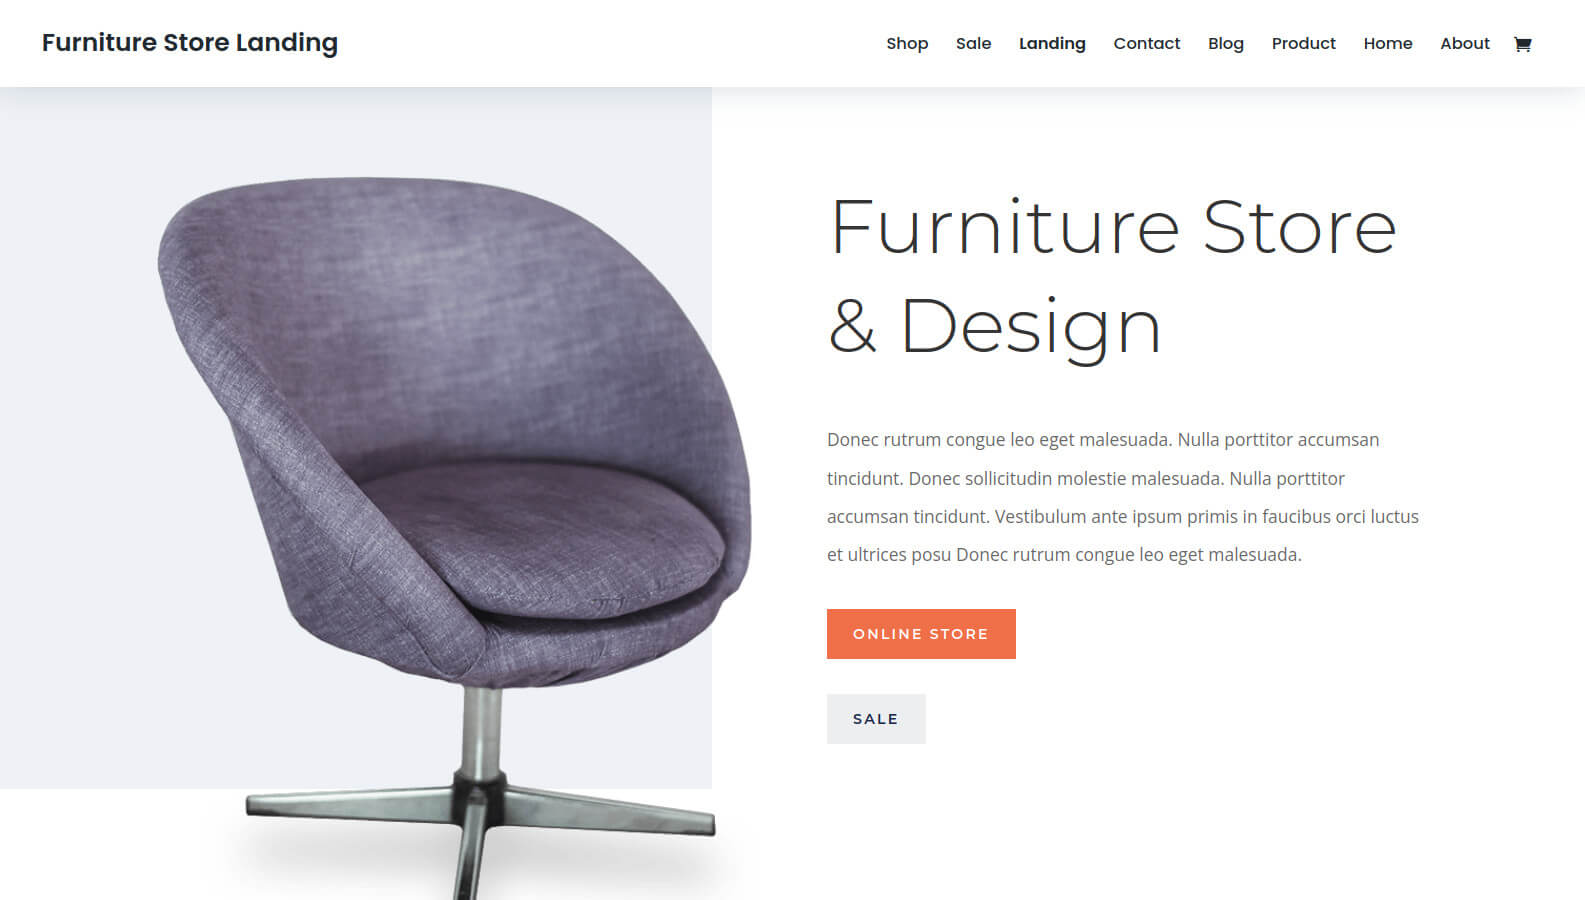 Furniture store website